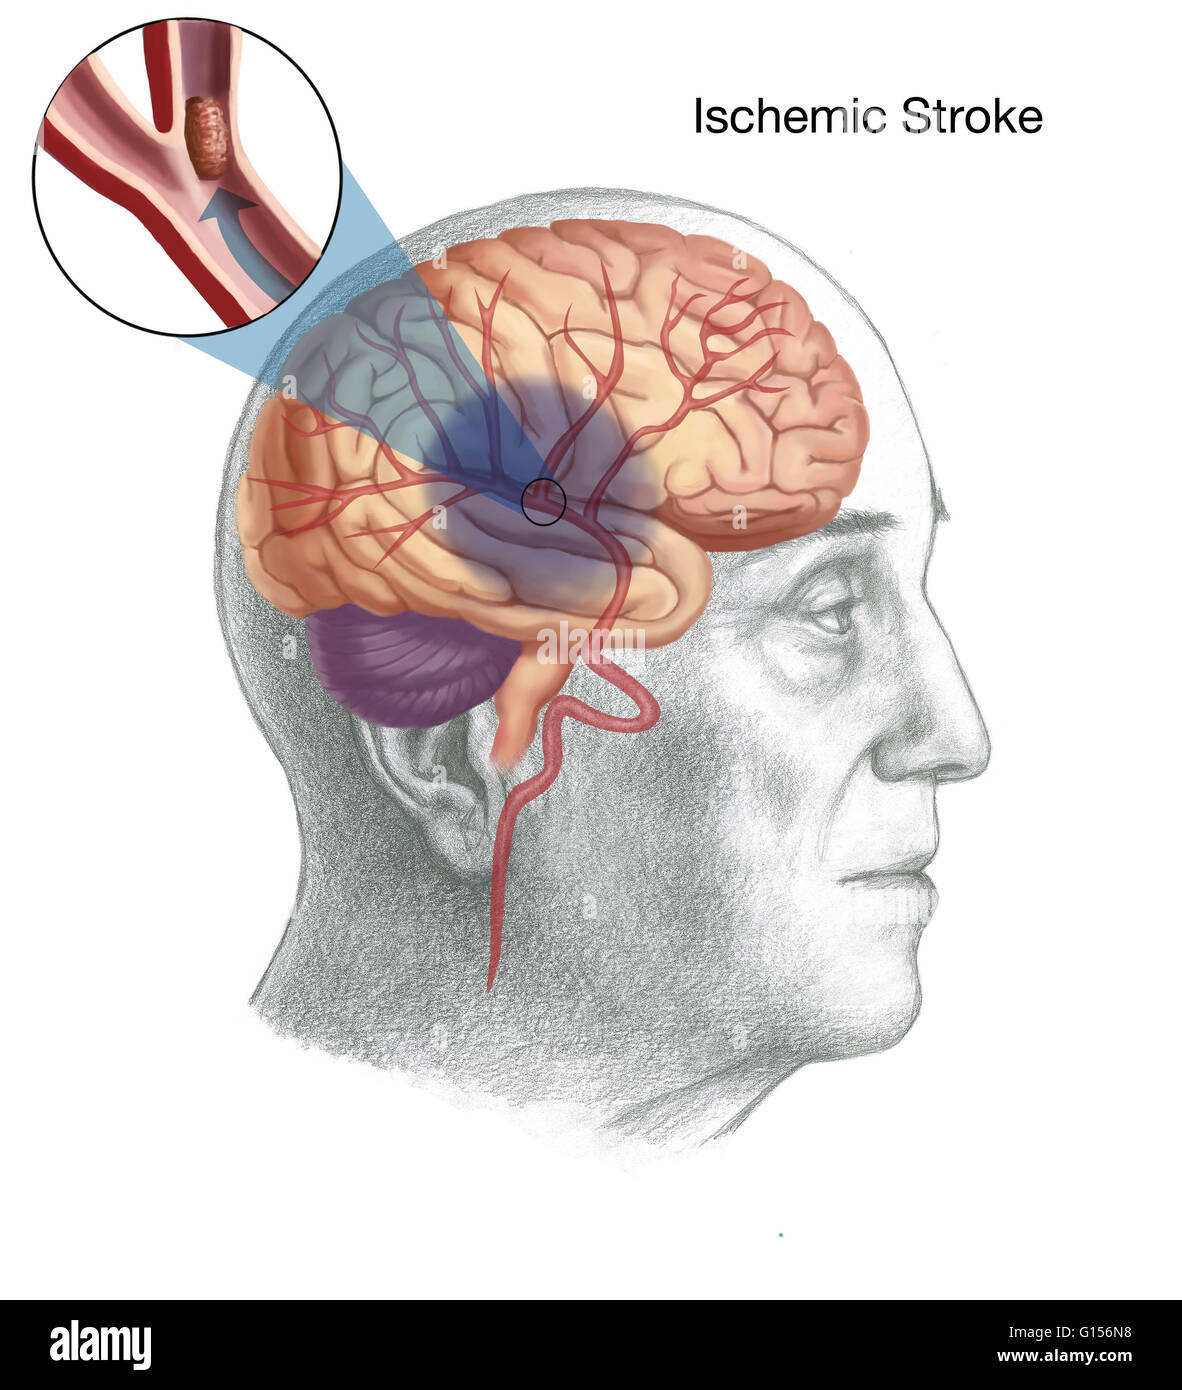 Illustrazione che mostra il meccanismo di una corsa ishemic. In un ictus ischemico, alimentazione di sangue da parte del cervello è diminuito, che portano a una disfunzione di quella zona del cervello. Qui, un coagulo di sangue è il motivo per cui si è limitato il flusso di sangue. Foto Stock